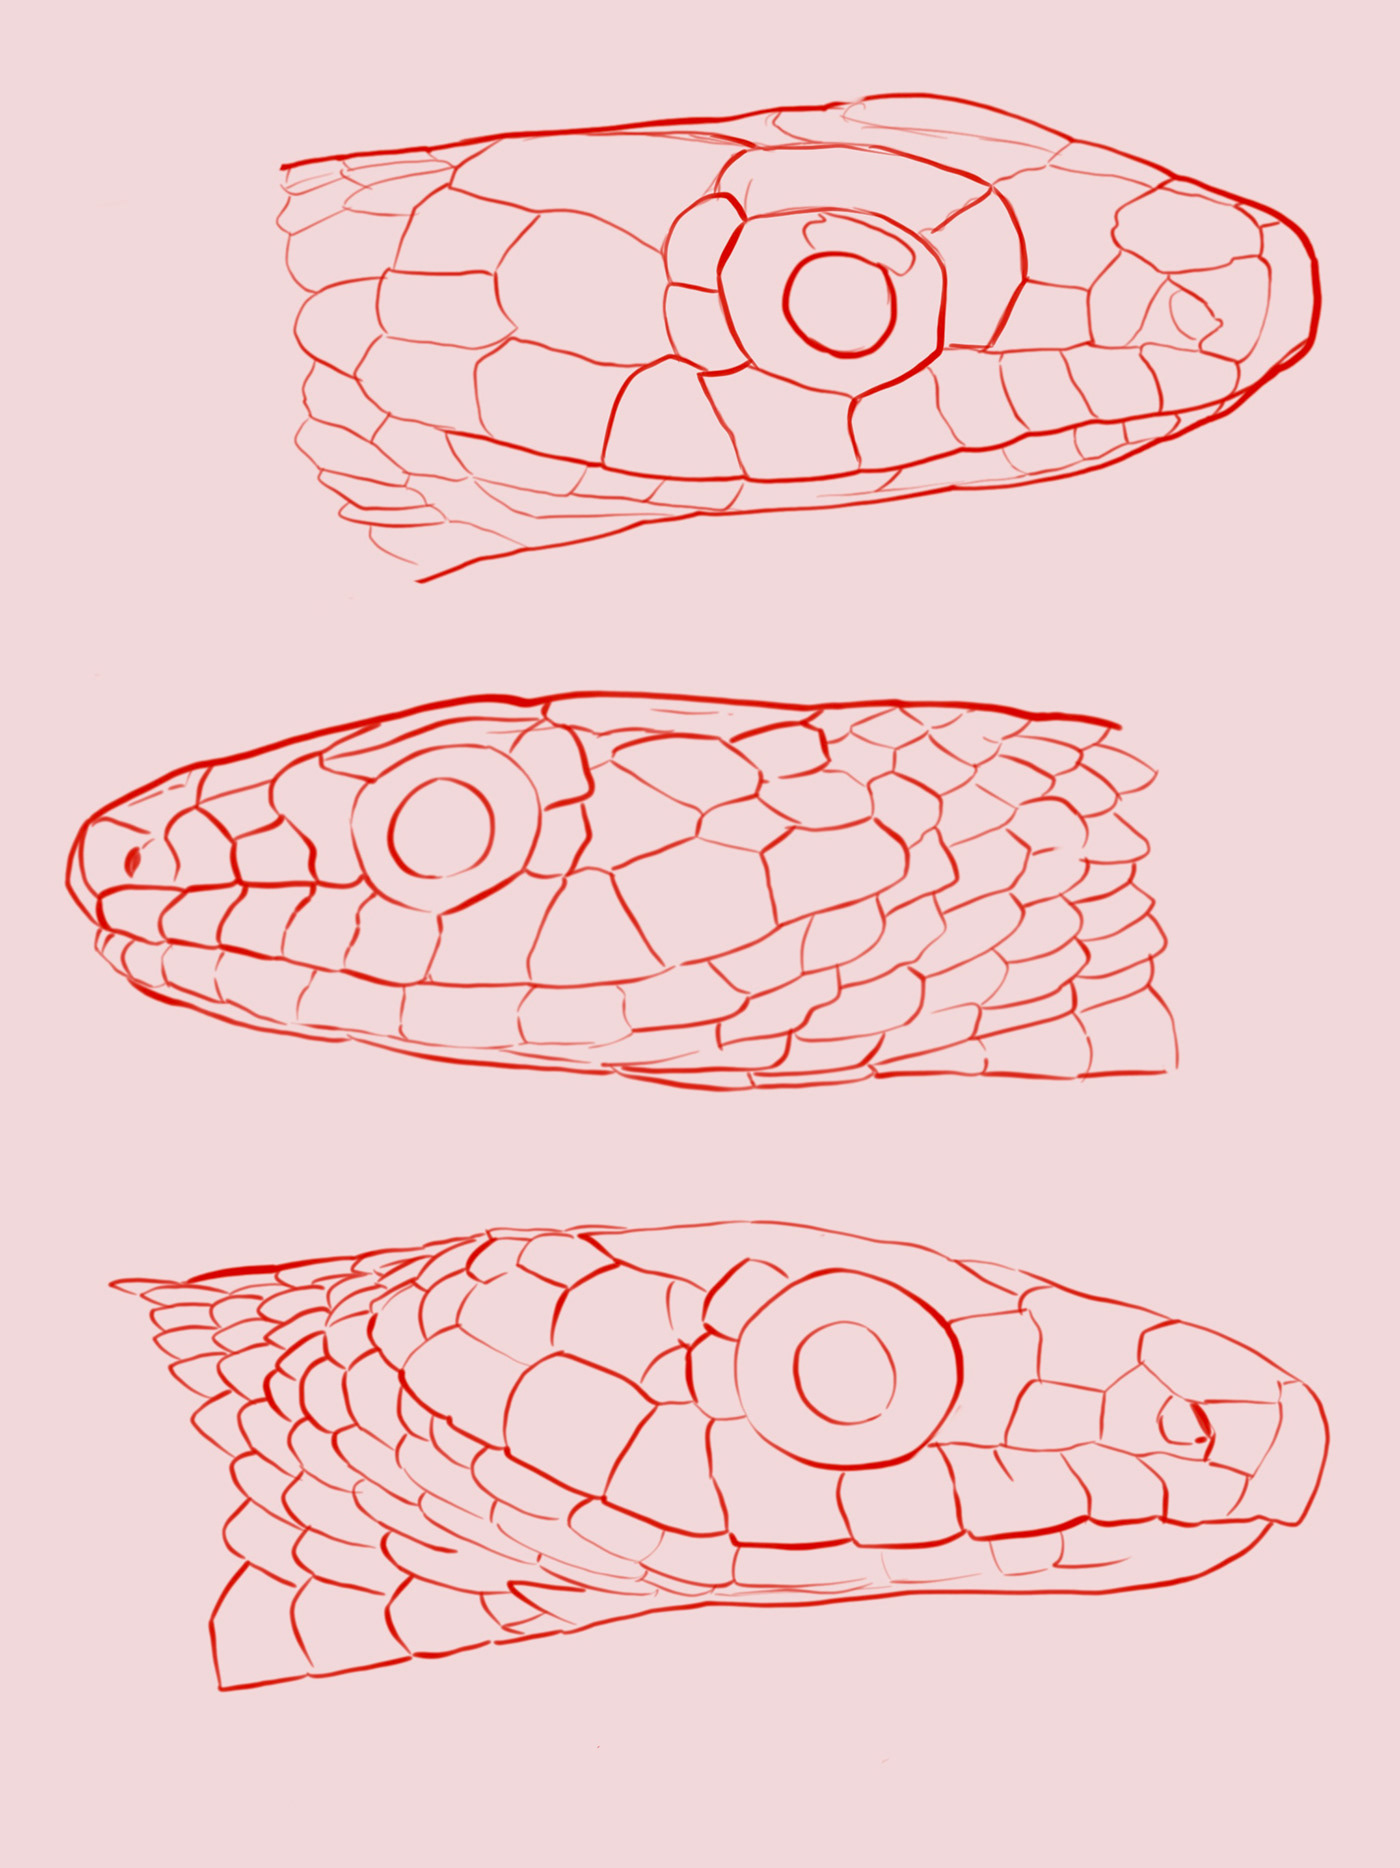 reptile serpent acuarela watercolor ilustracion ilustracioncientífica scientificillustration